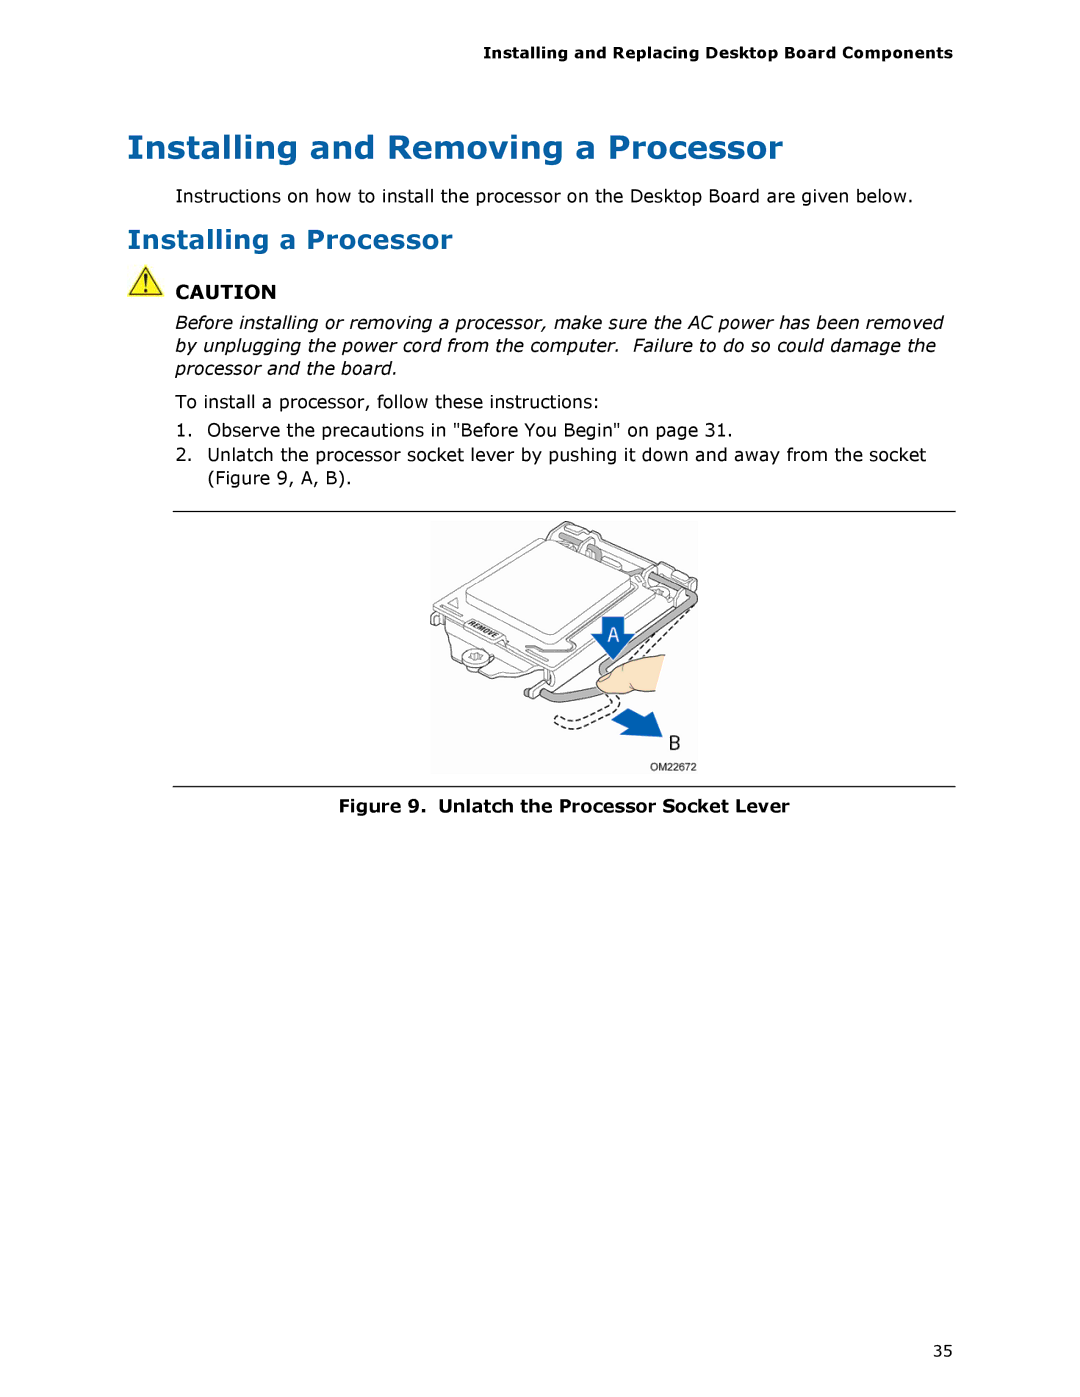 Intel BLKDZ68BC manual Installing and Removing a Processor, Installing a Processor 